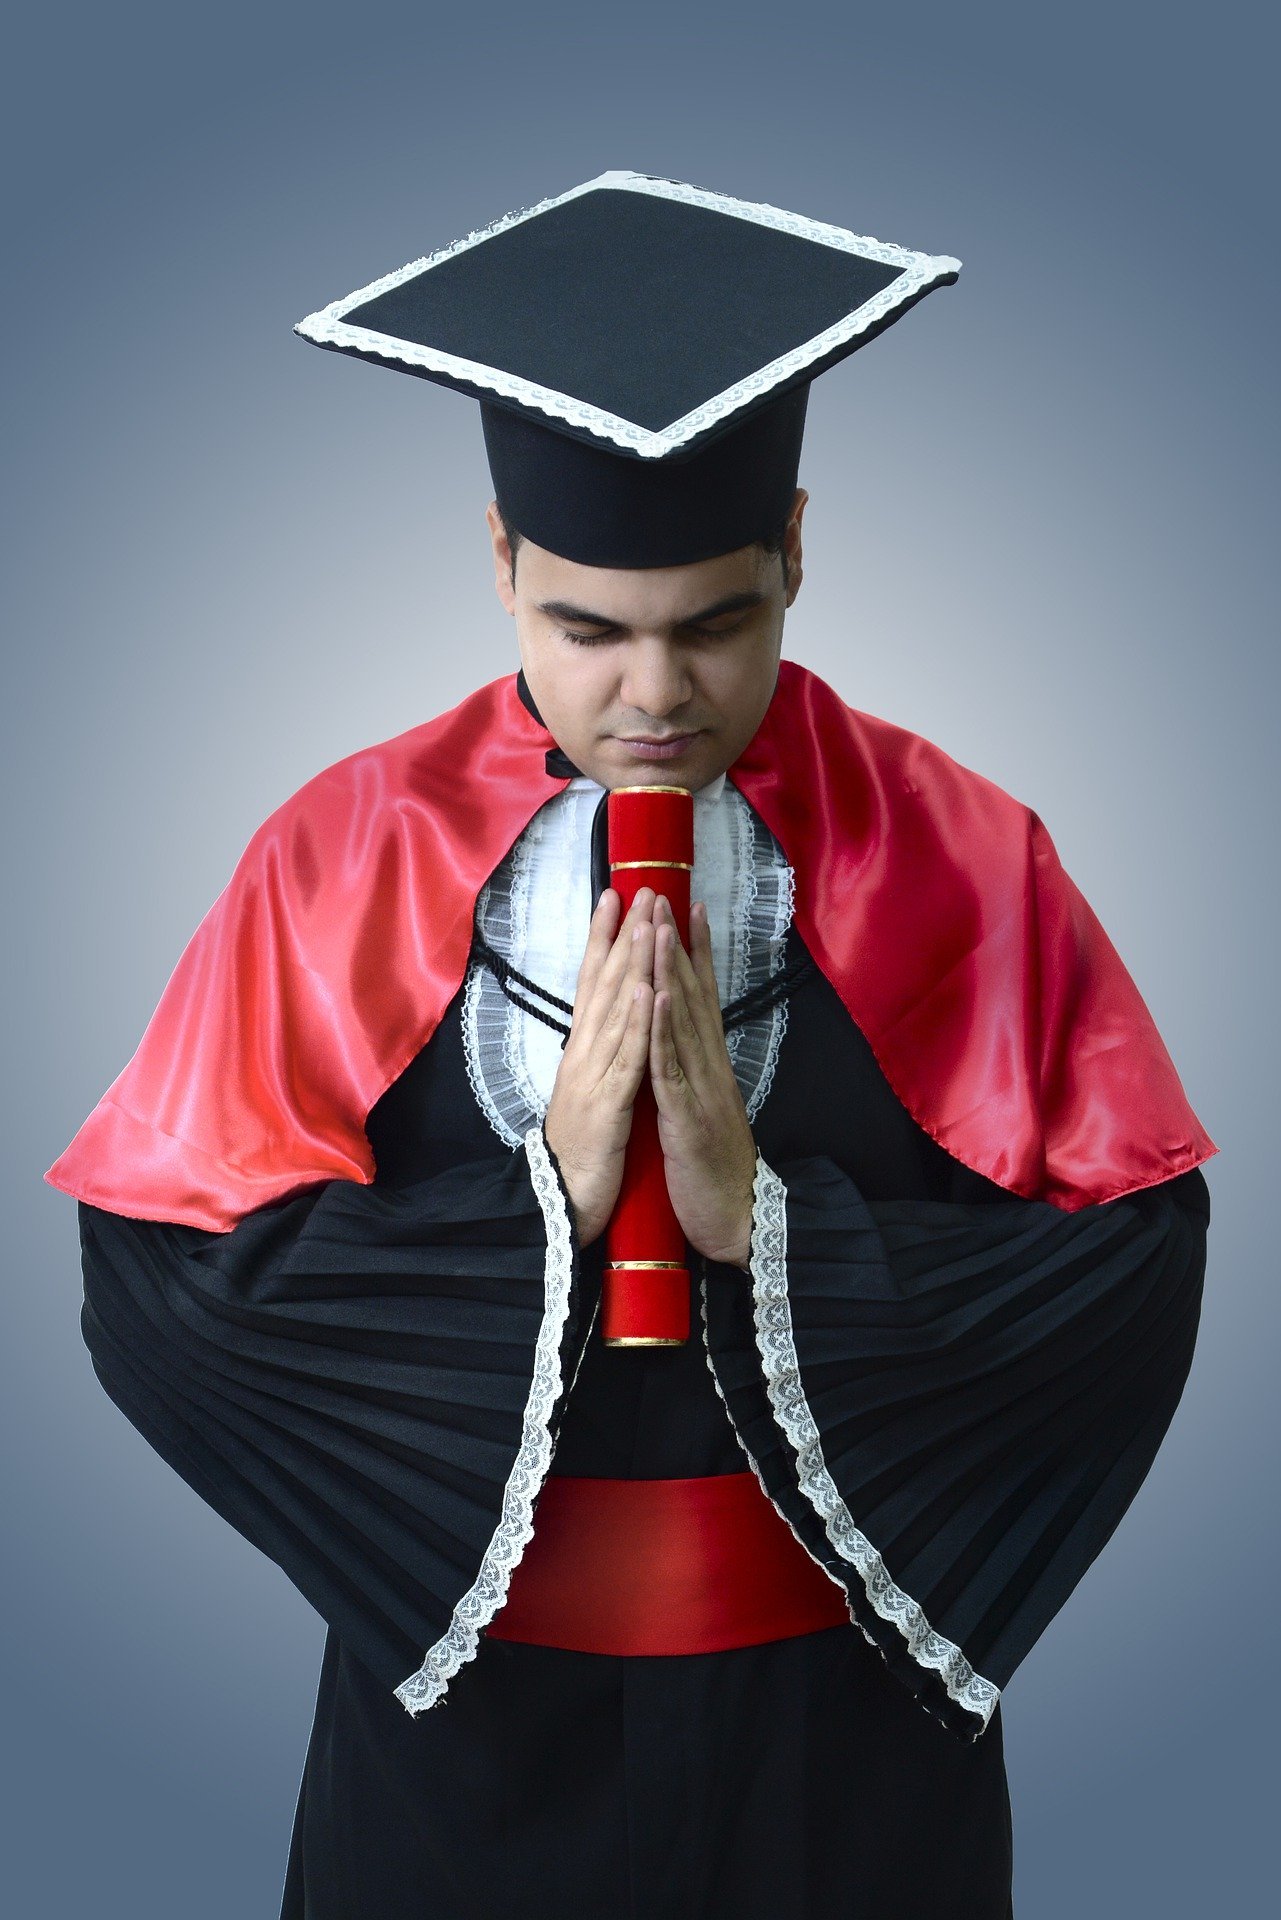 Homem formando de cabeça baixa segurando diploma, vestindo capelo e beca